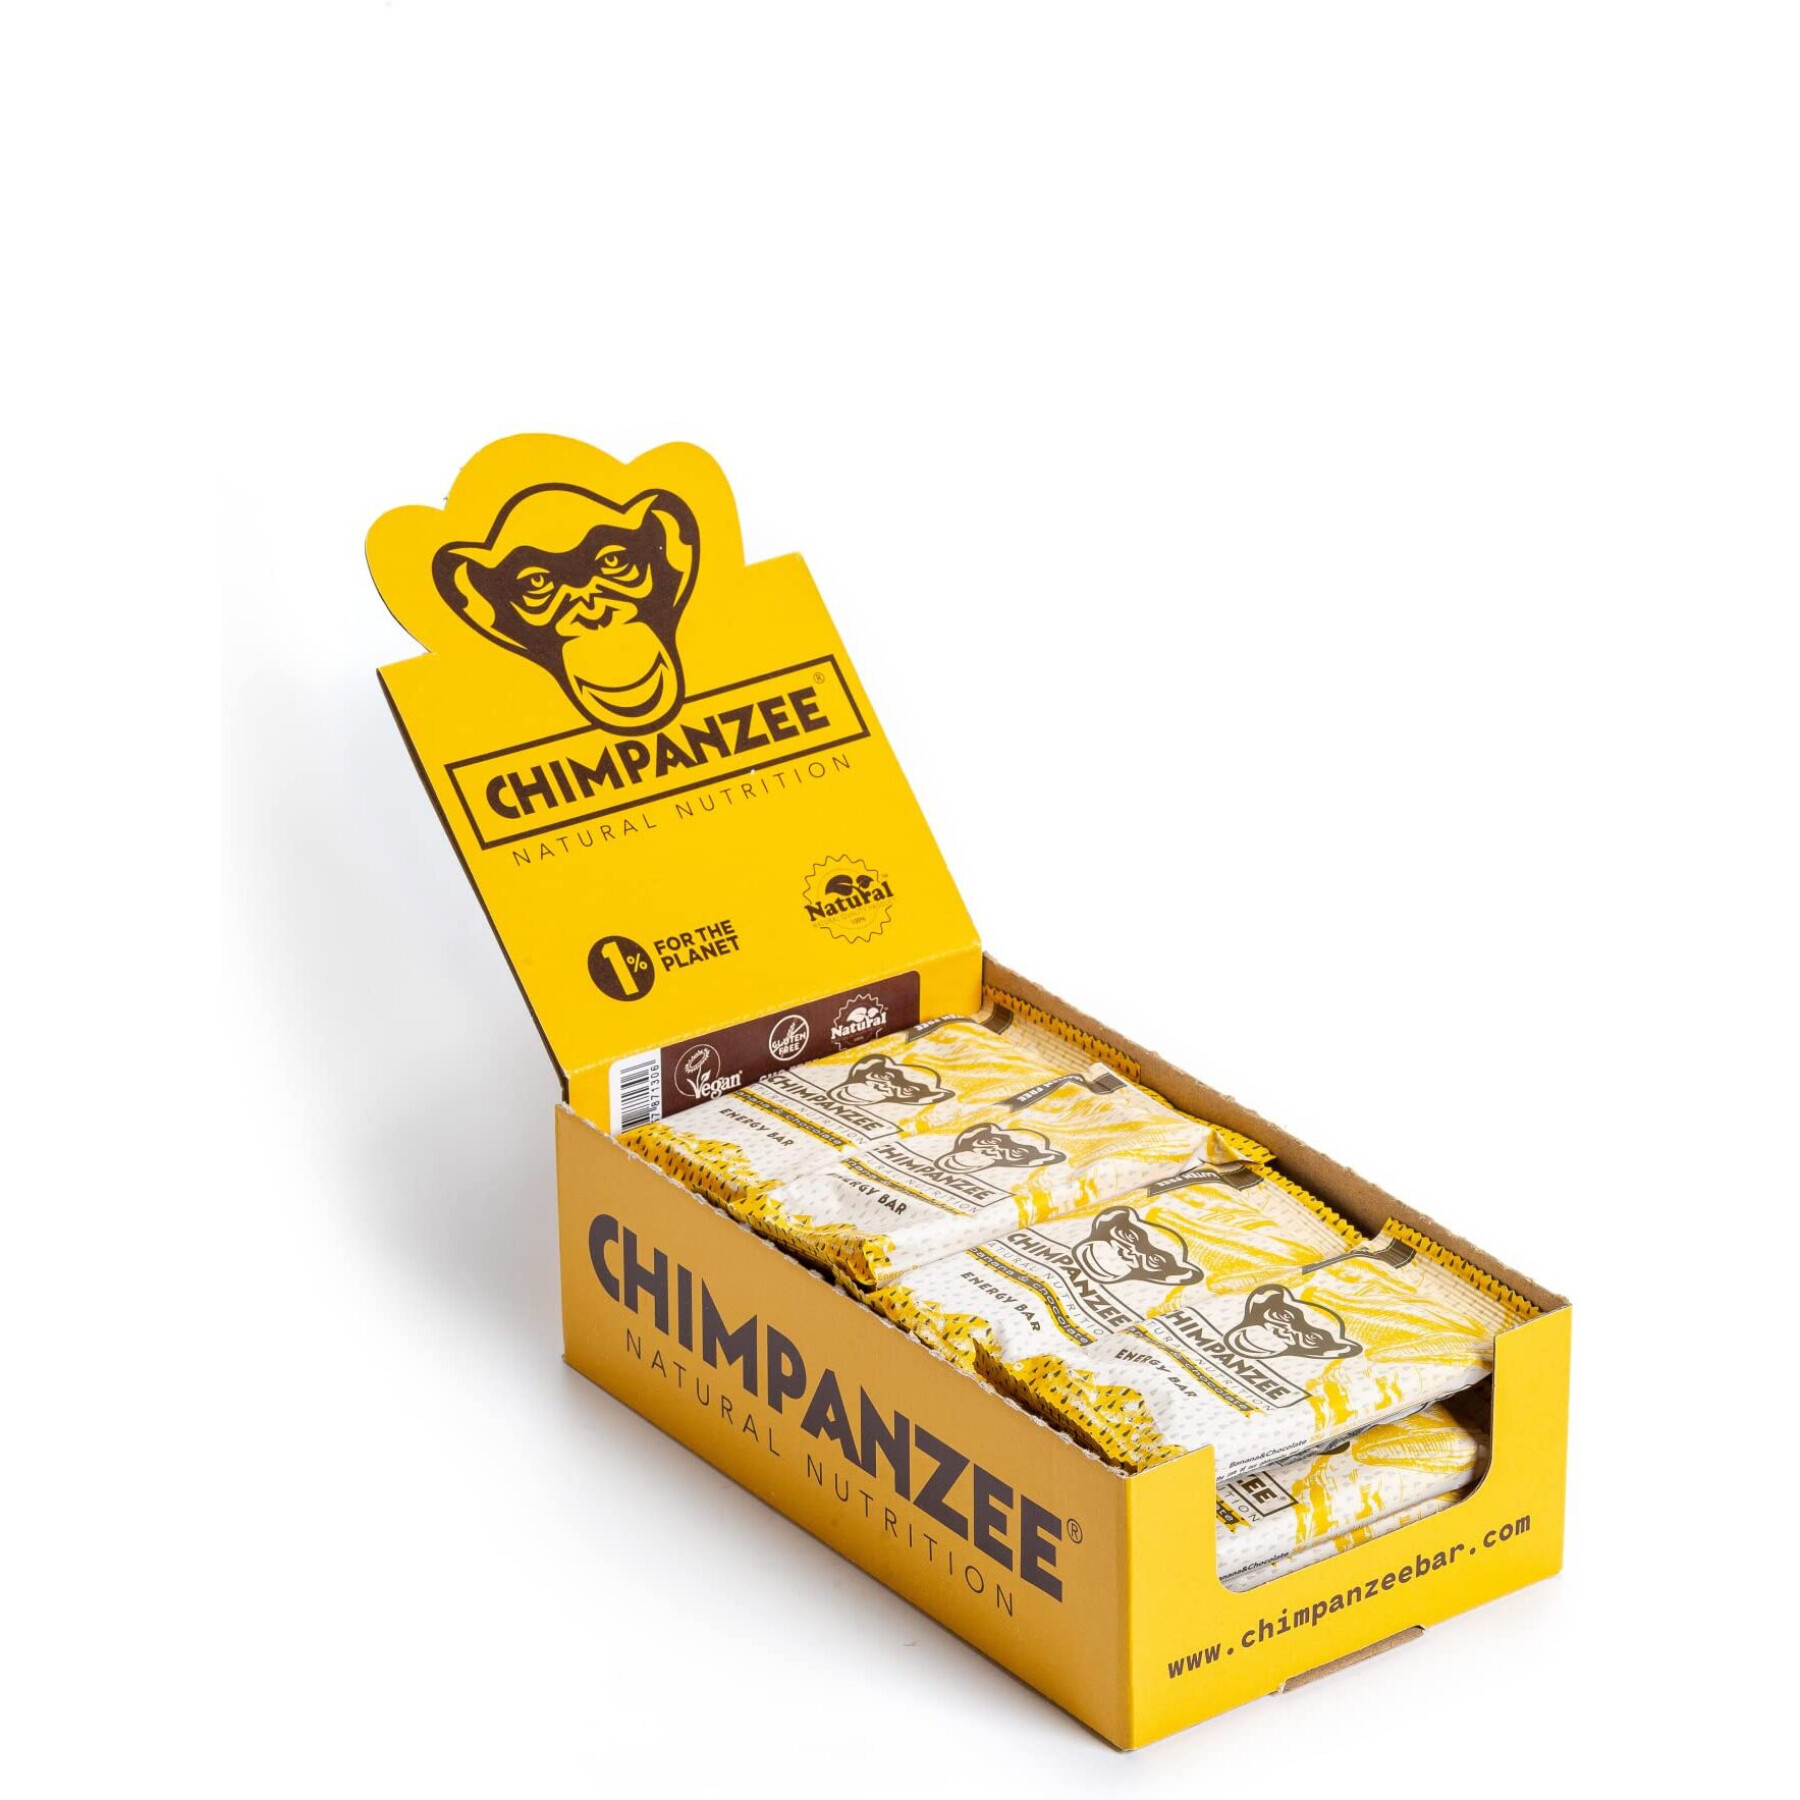 Energy bar Chimpanzee vegan (x20) : banane/chocolat 55g 